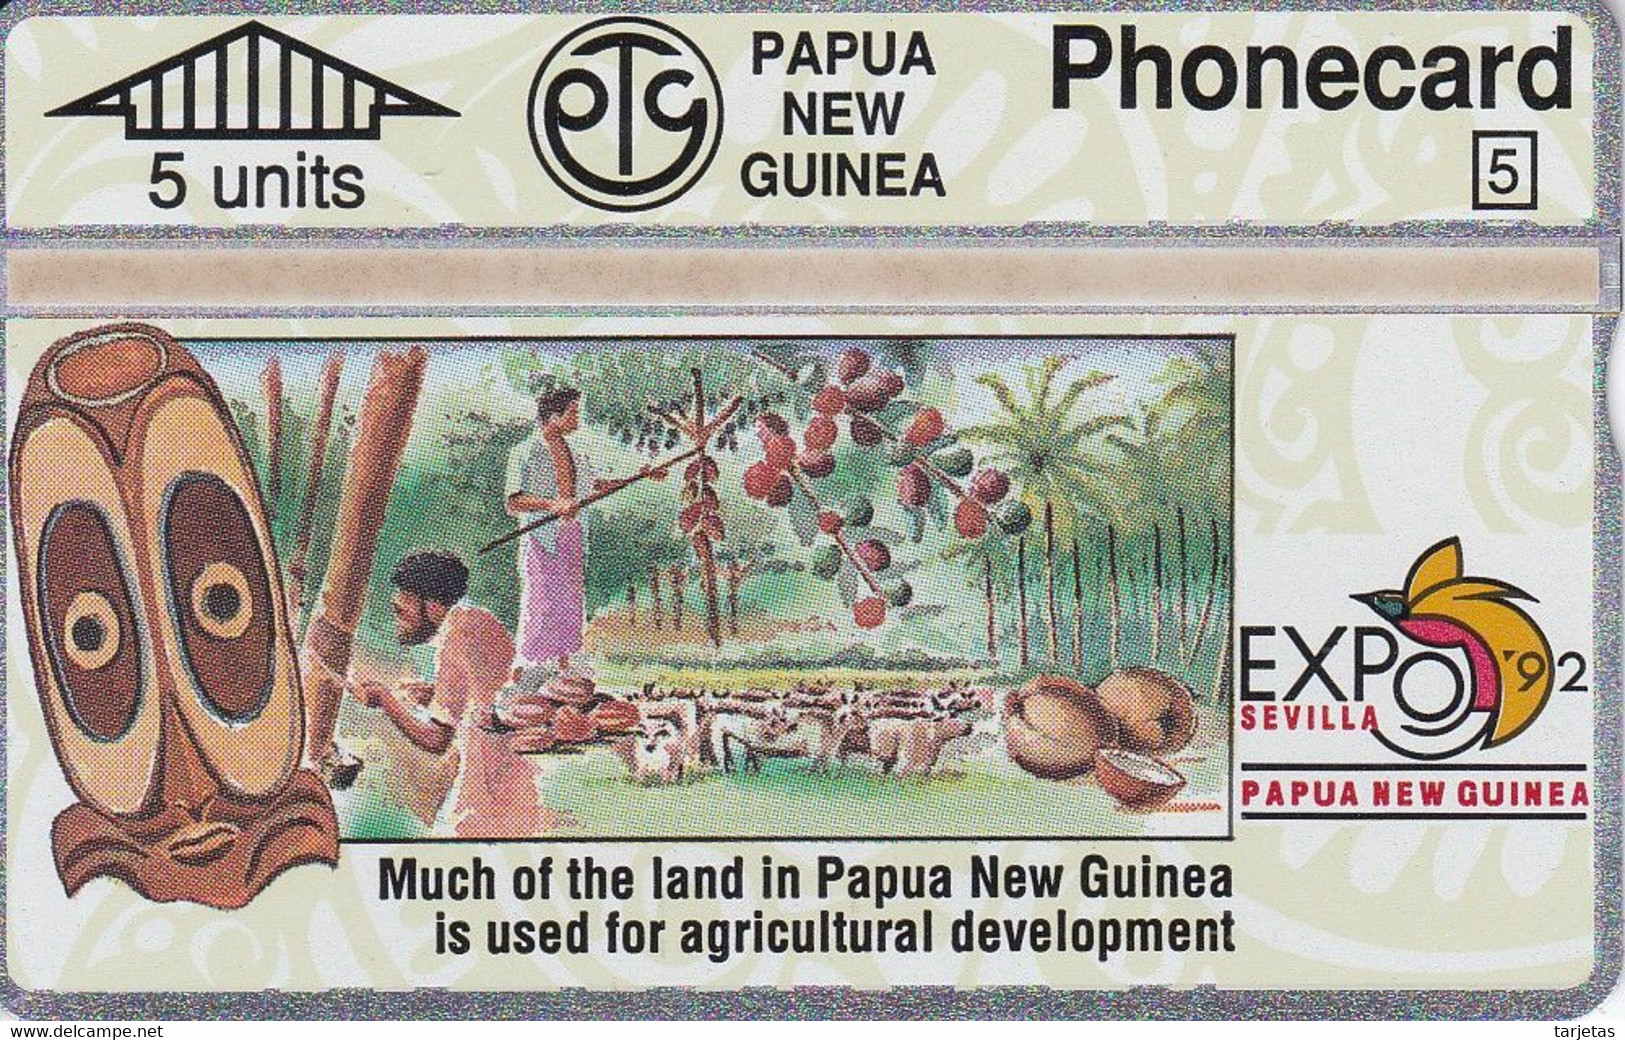 TARJETA DE PAPUA Y NUEVA GUINEA EXPO 92 SEVILLA (203A) (NUEVA-MINT) - Papua New Guinea